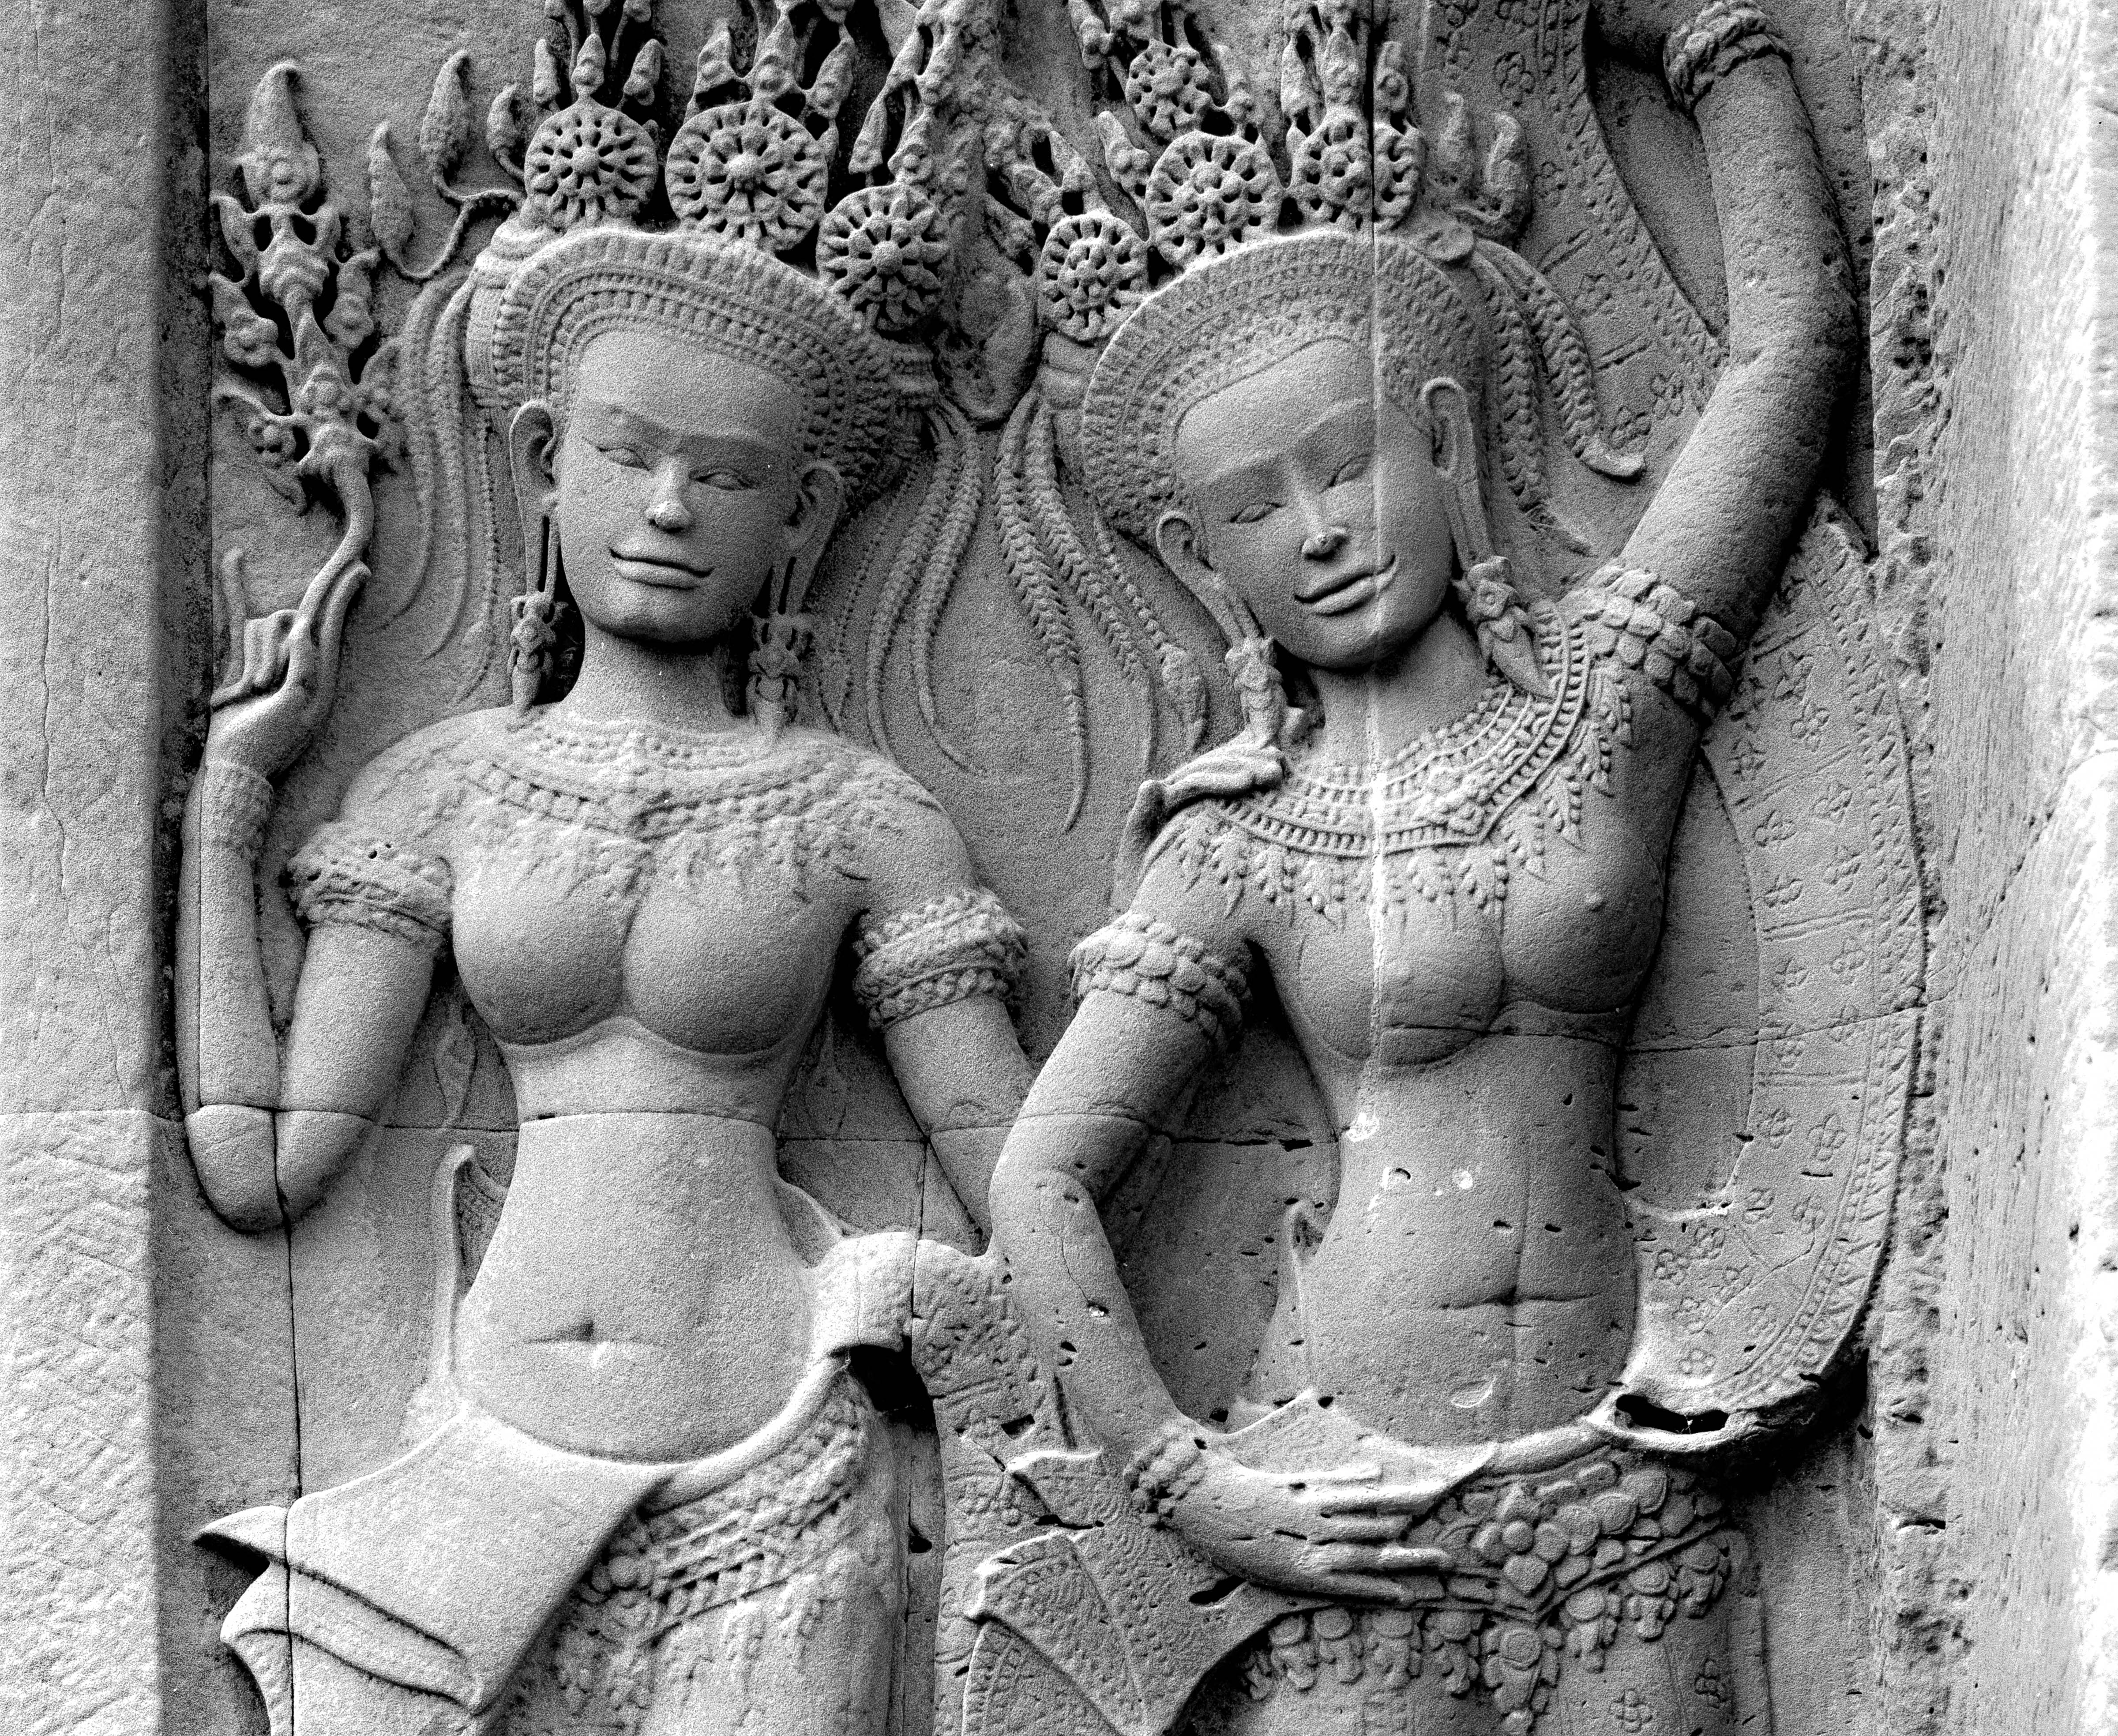 Cambodia, Angkor Wat, Aspareses, 1996